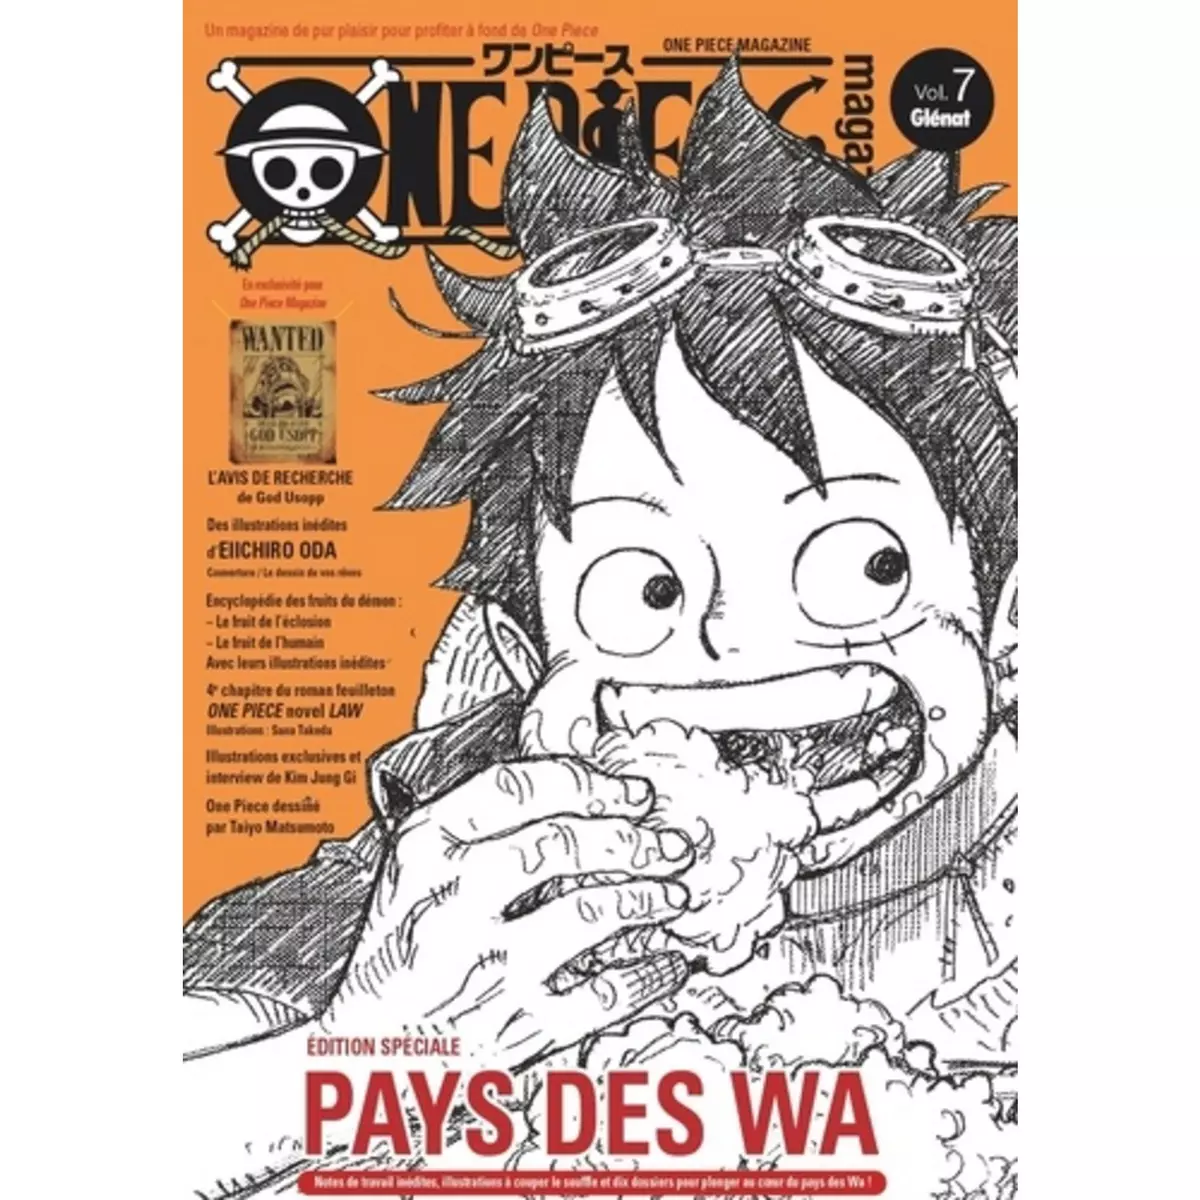  ONE PIECE MAGAZINE N° 7 : PAYS DES WA, Oda Eiichirô